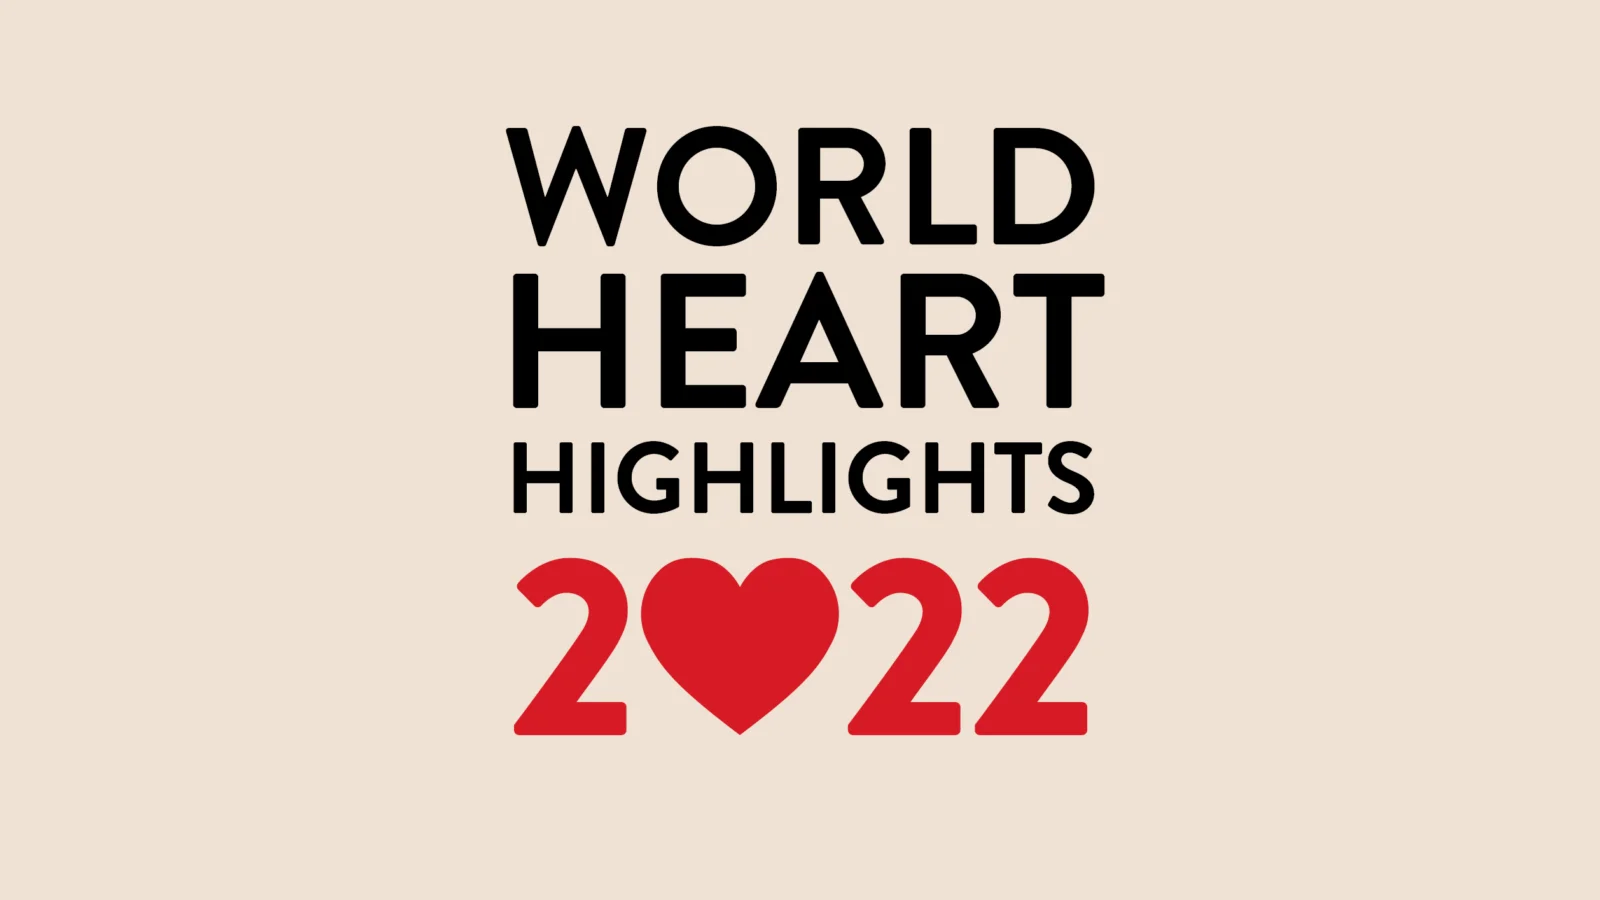 World Heart Highlights 2022